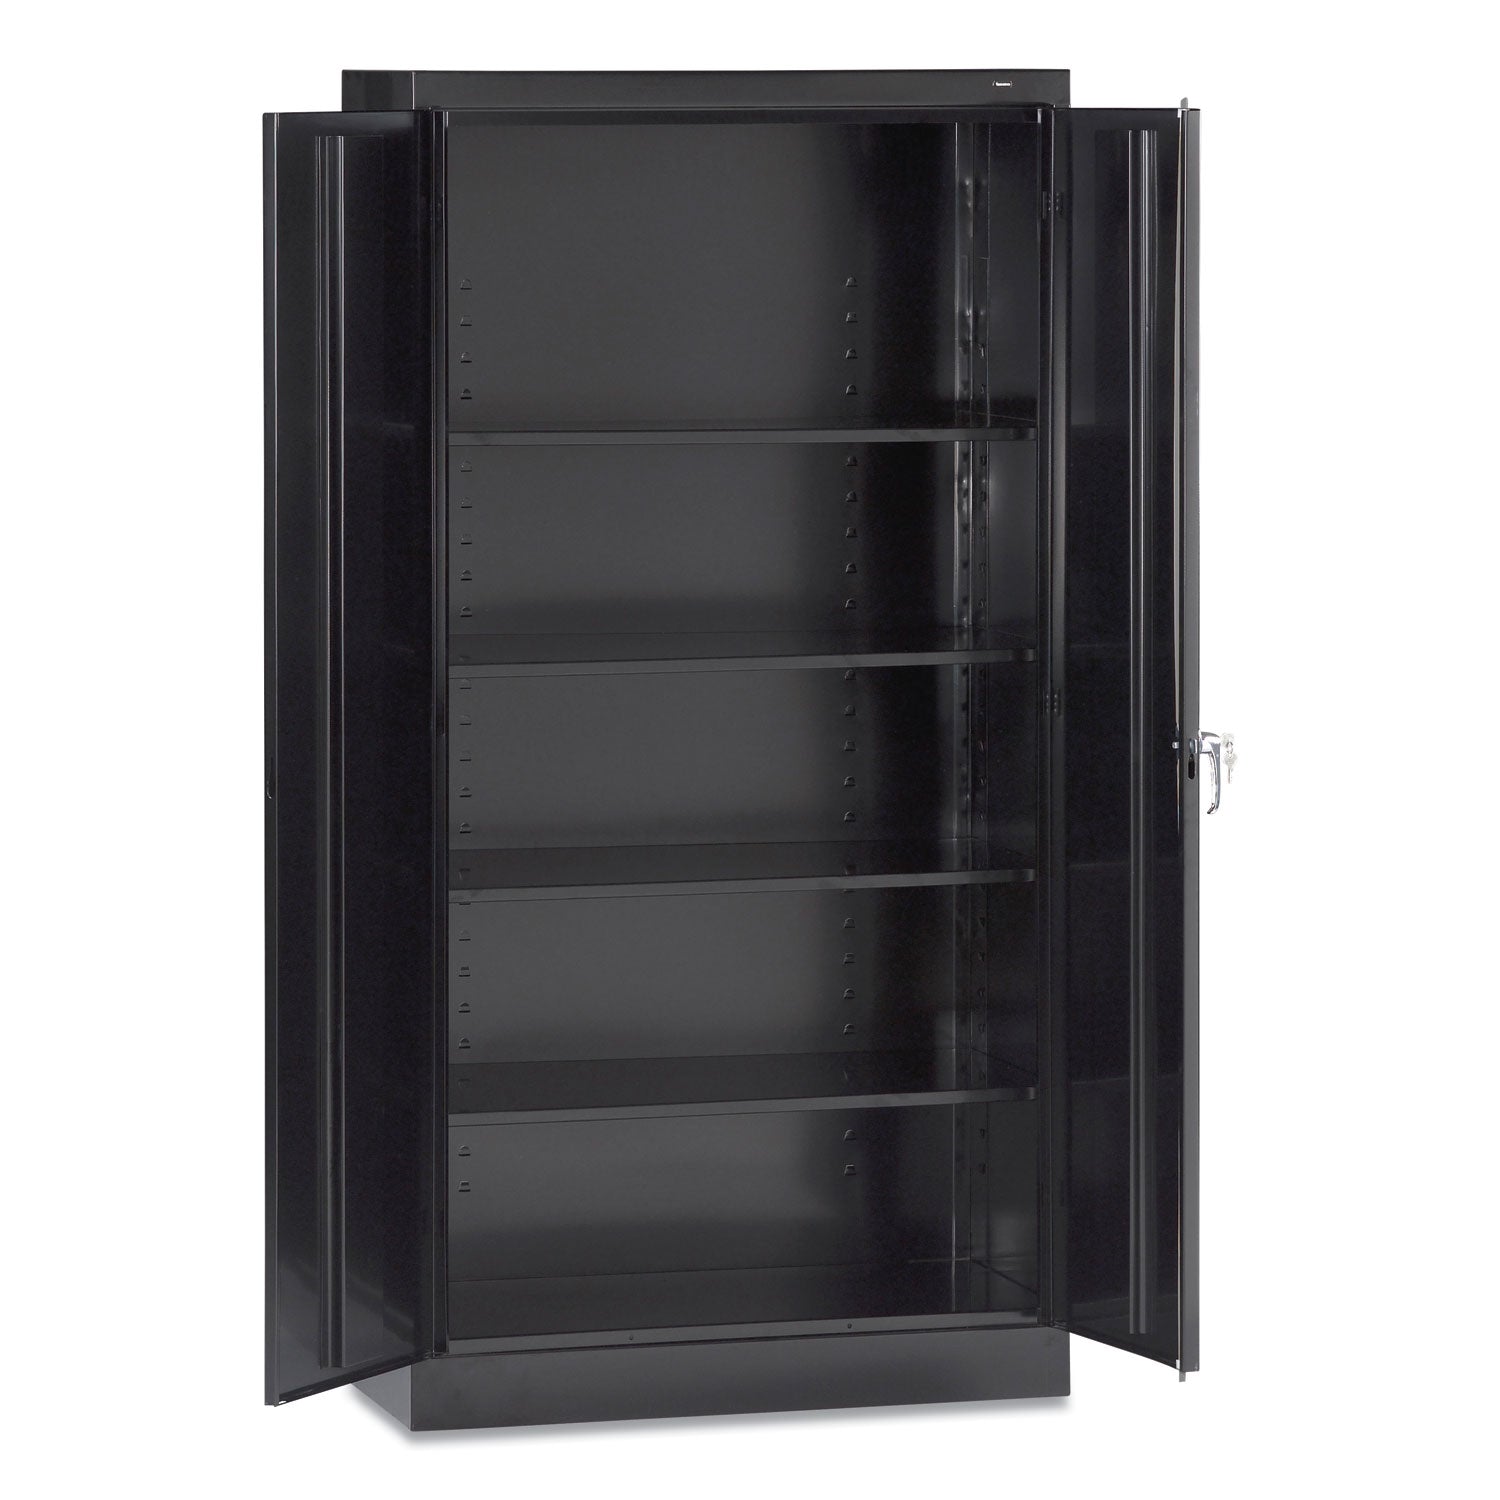 72-high-standard-cabinet-assembled-36w-x-18d-x-72h-black_tnn7218blk - 1